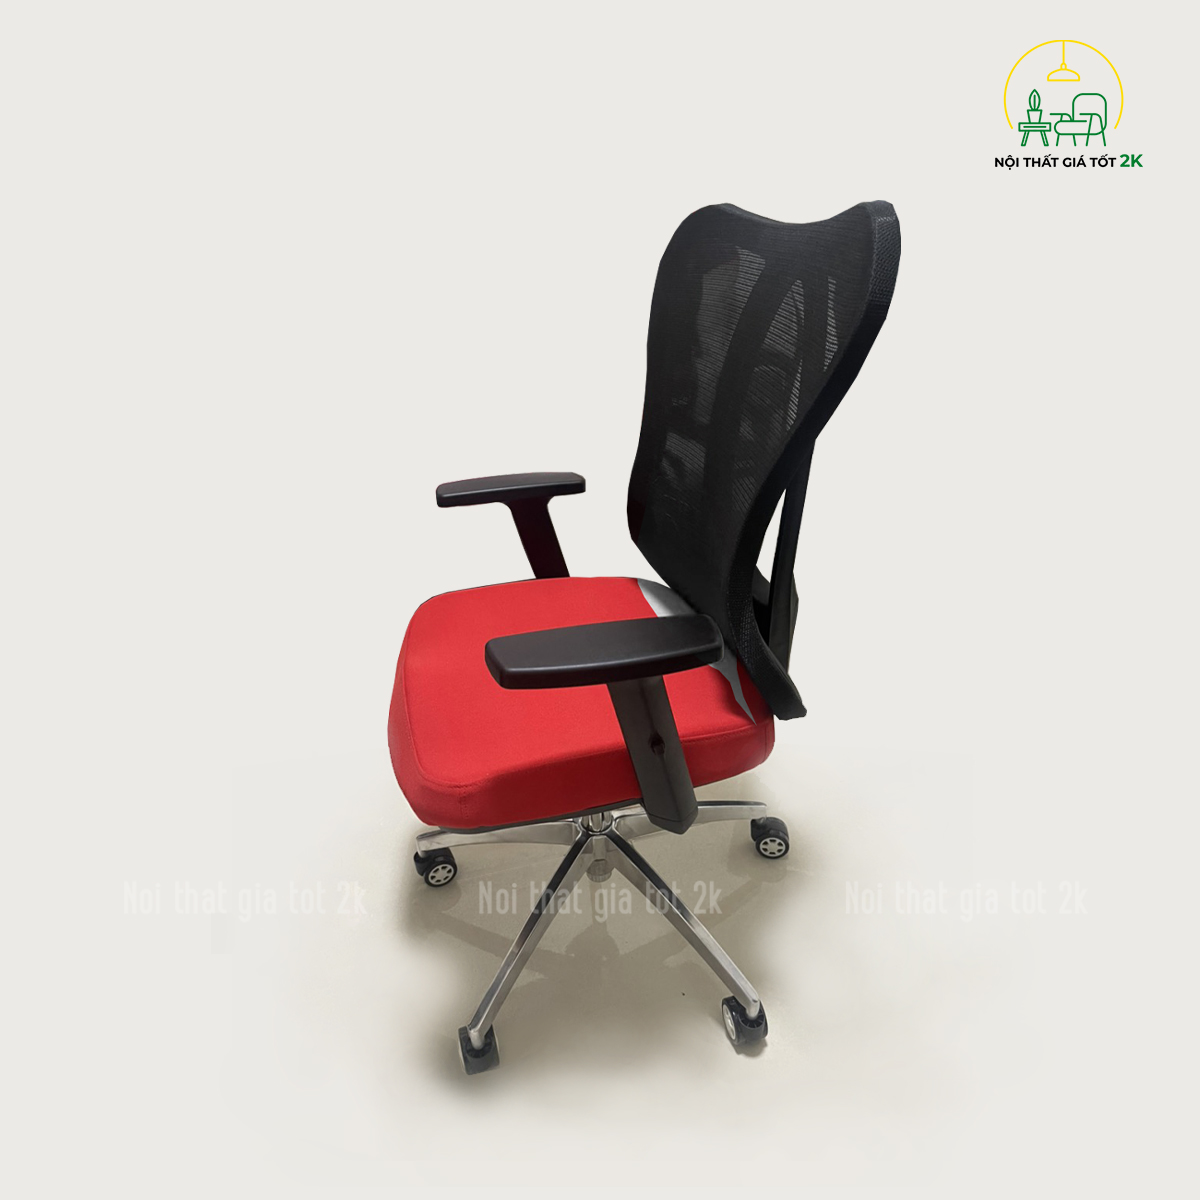 ghế nhân viên gv032 có thể xoay 360 độ dễ dàng linh hoạt